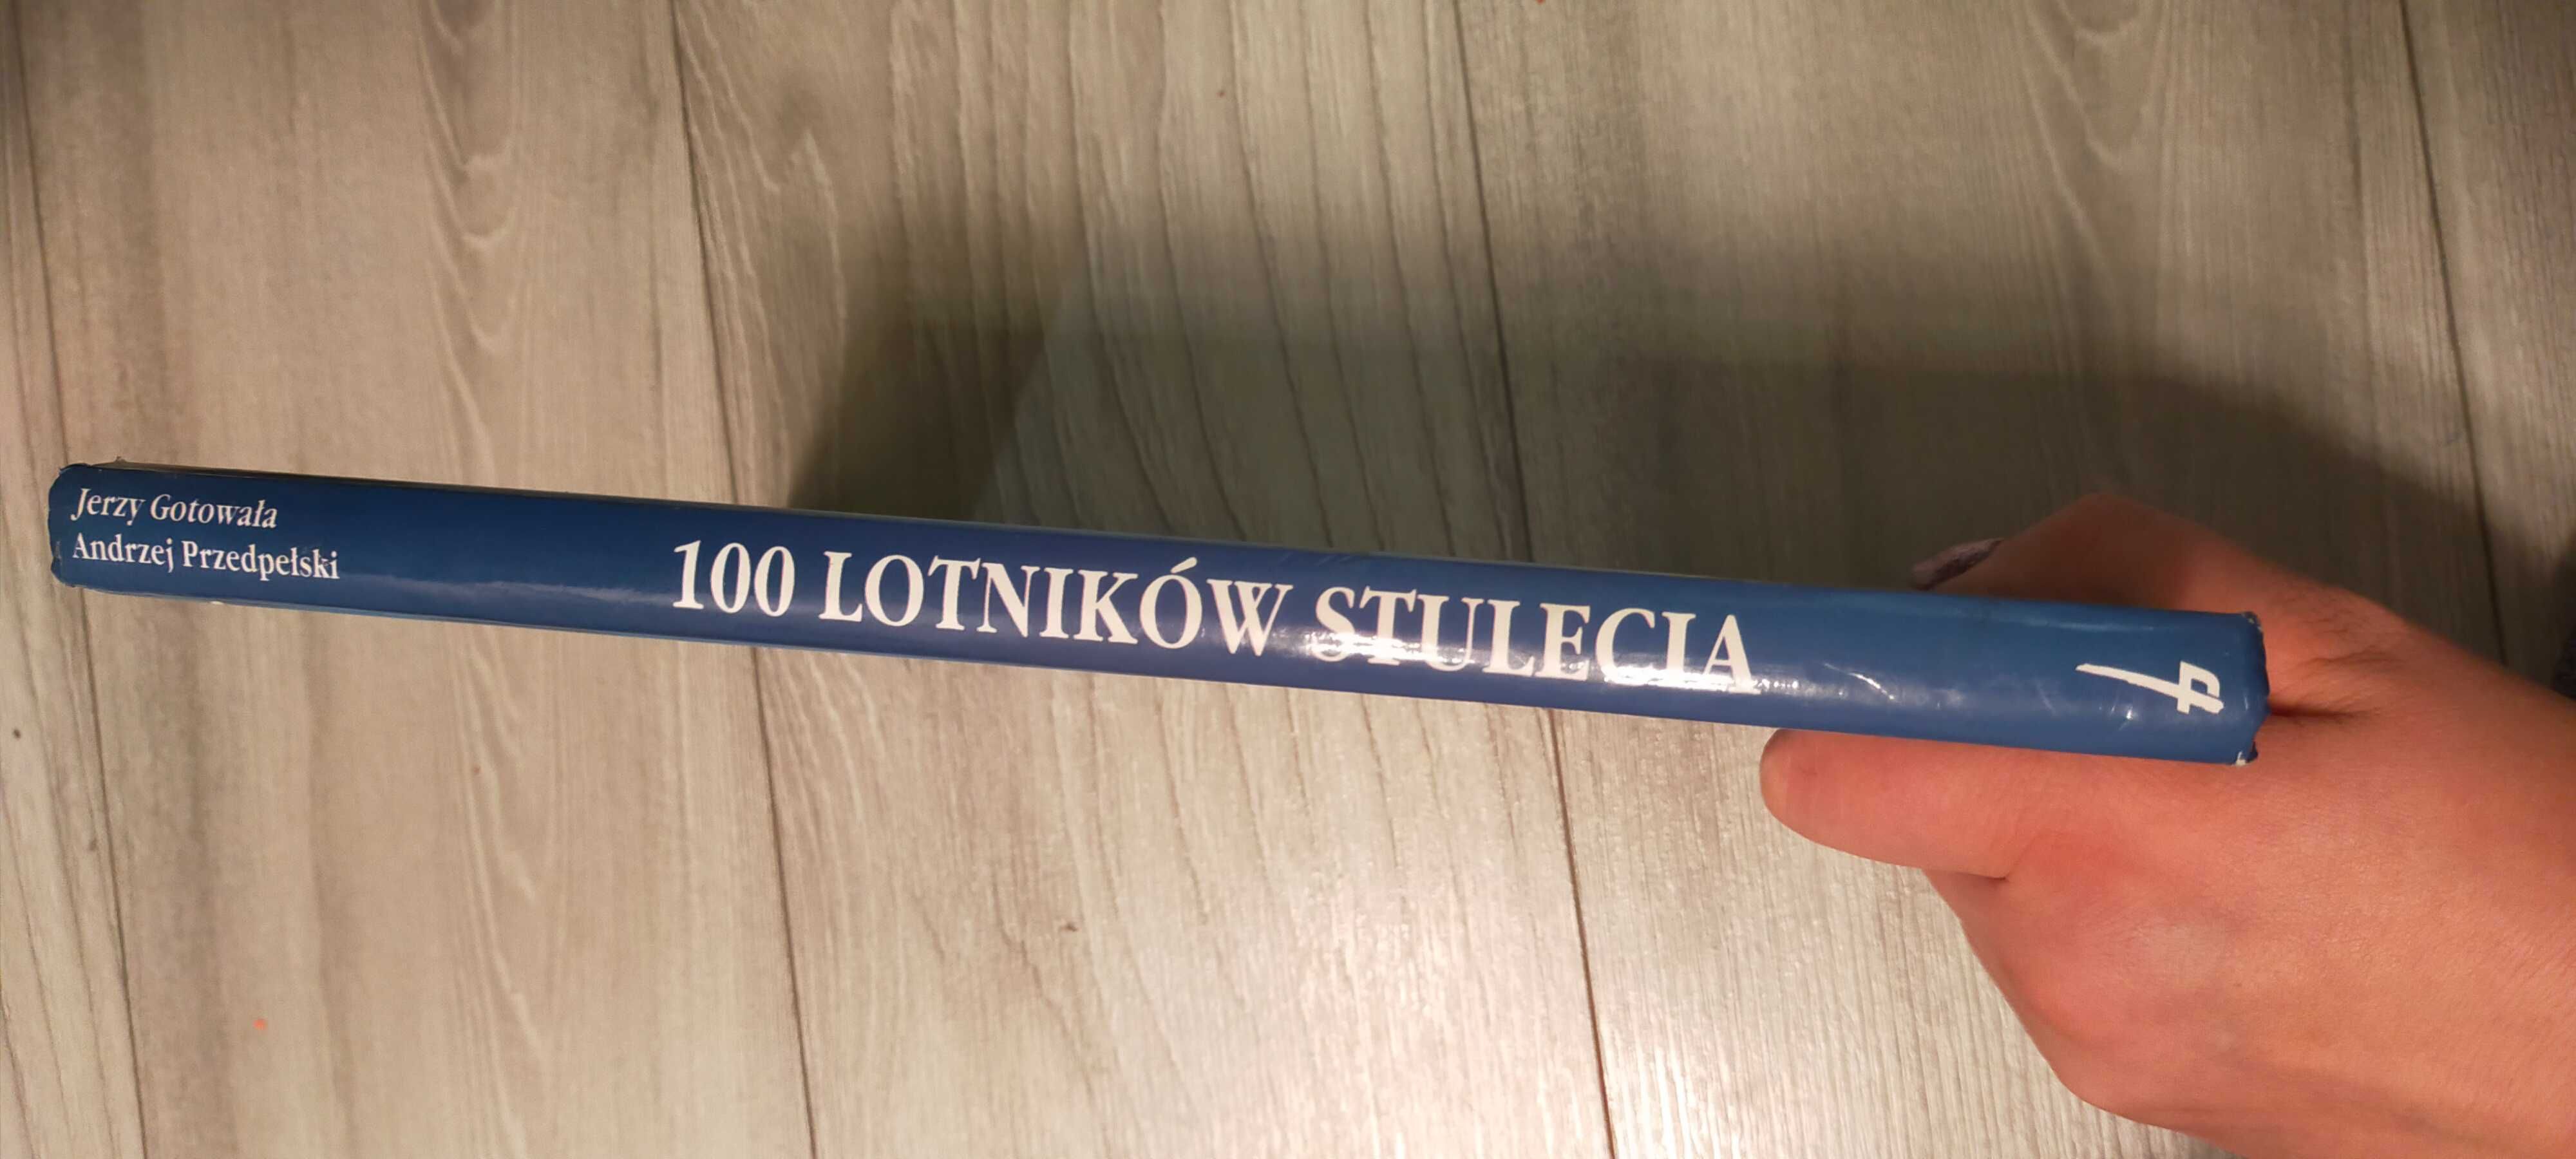 Książka/ Album "100 lotników stulecia"